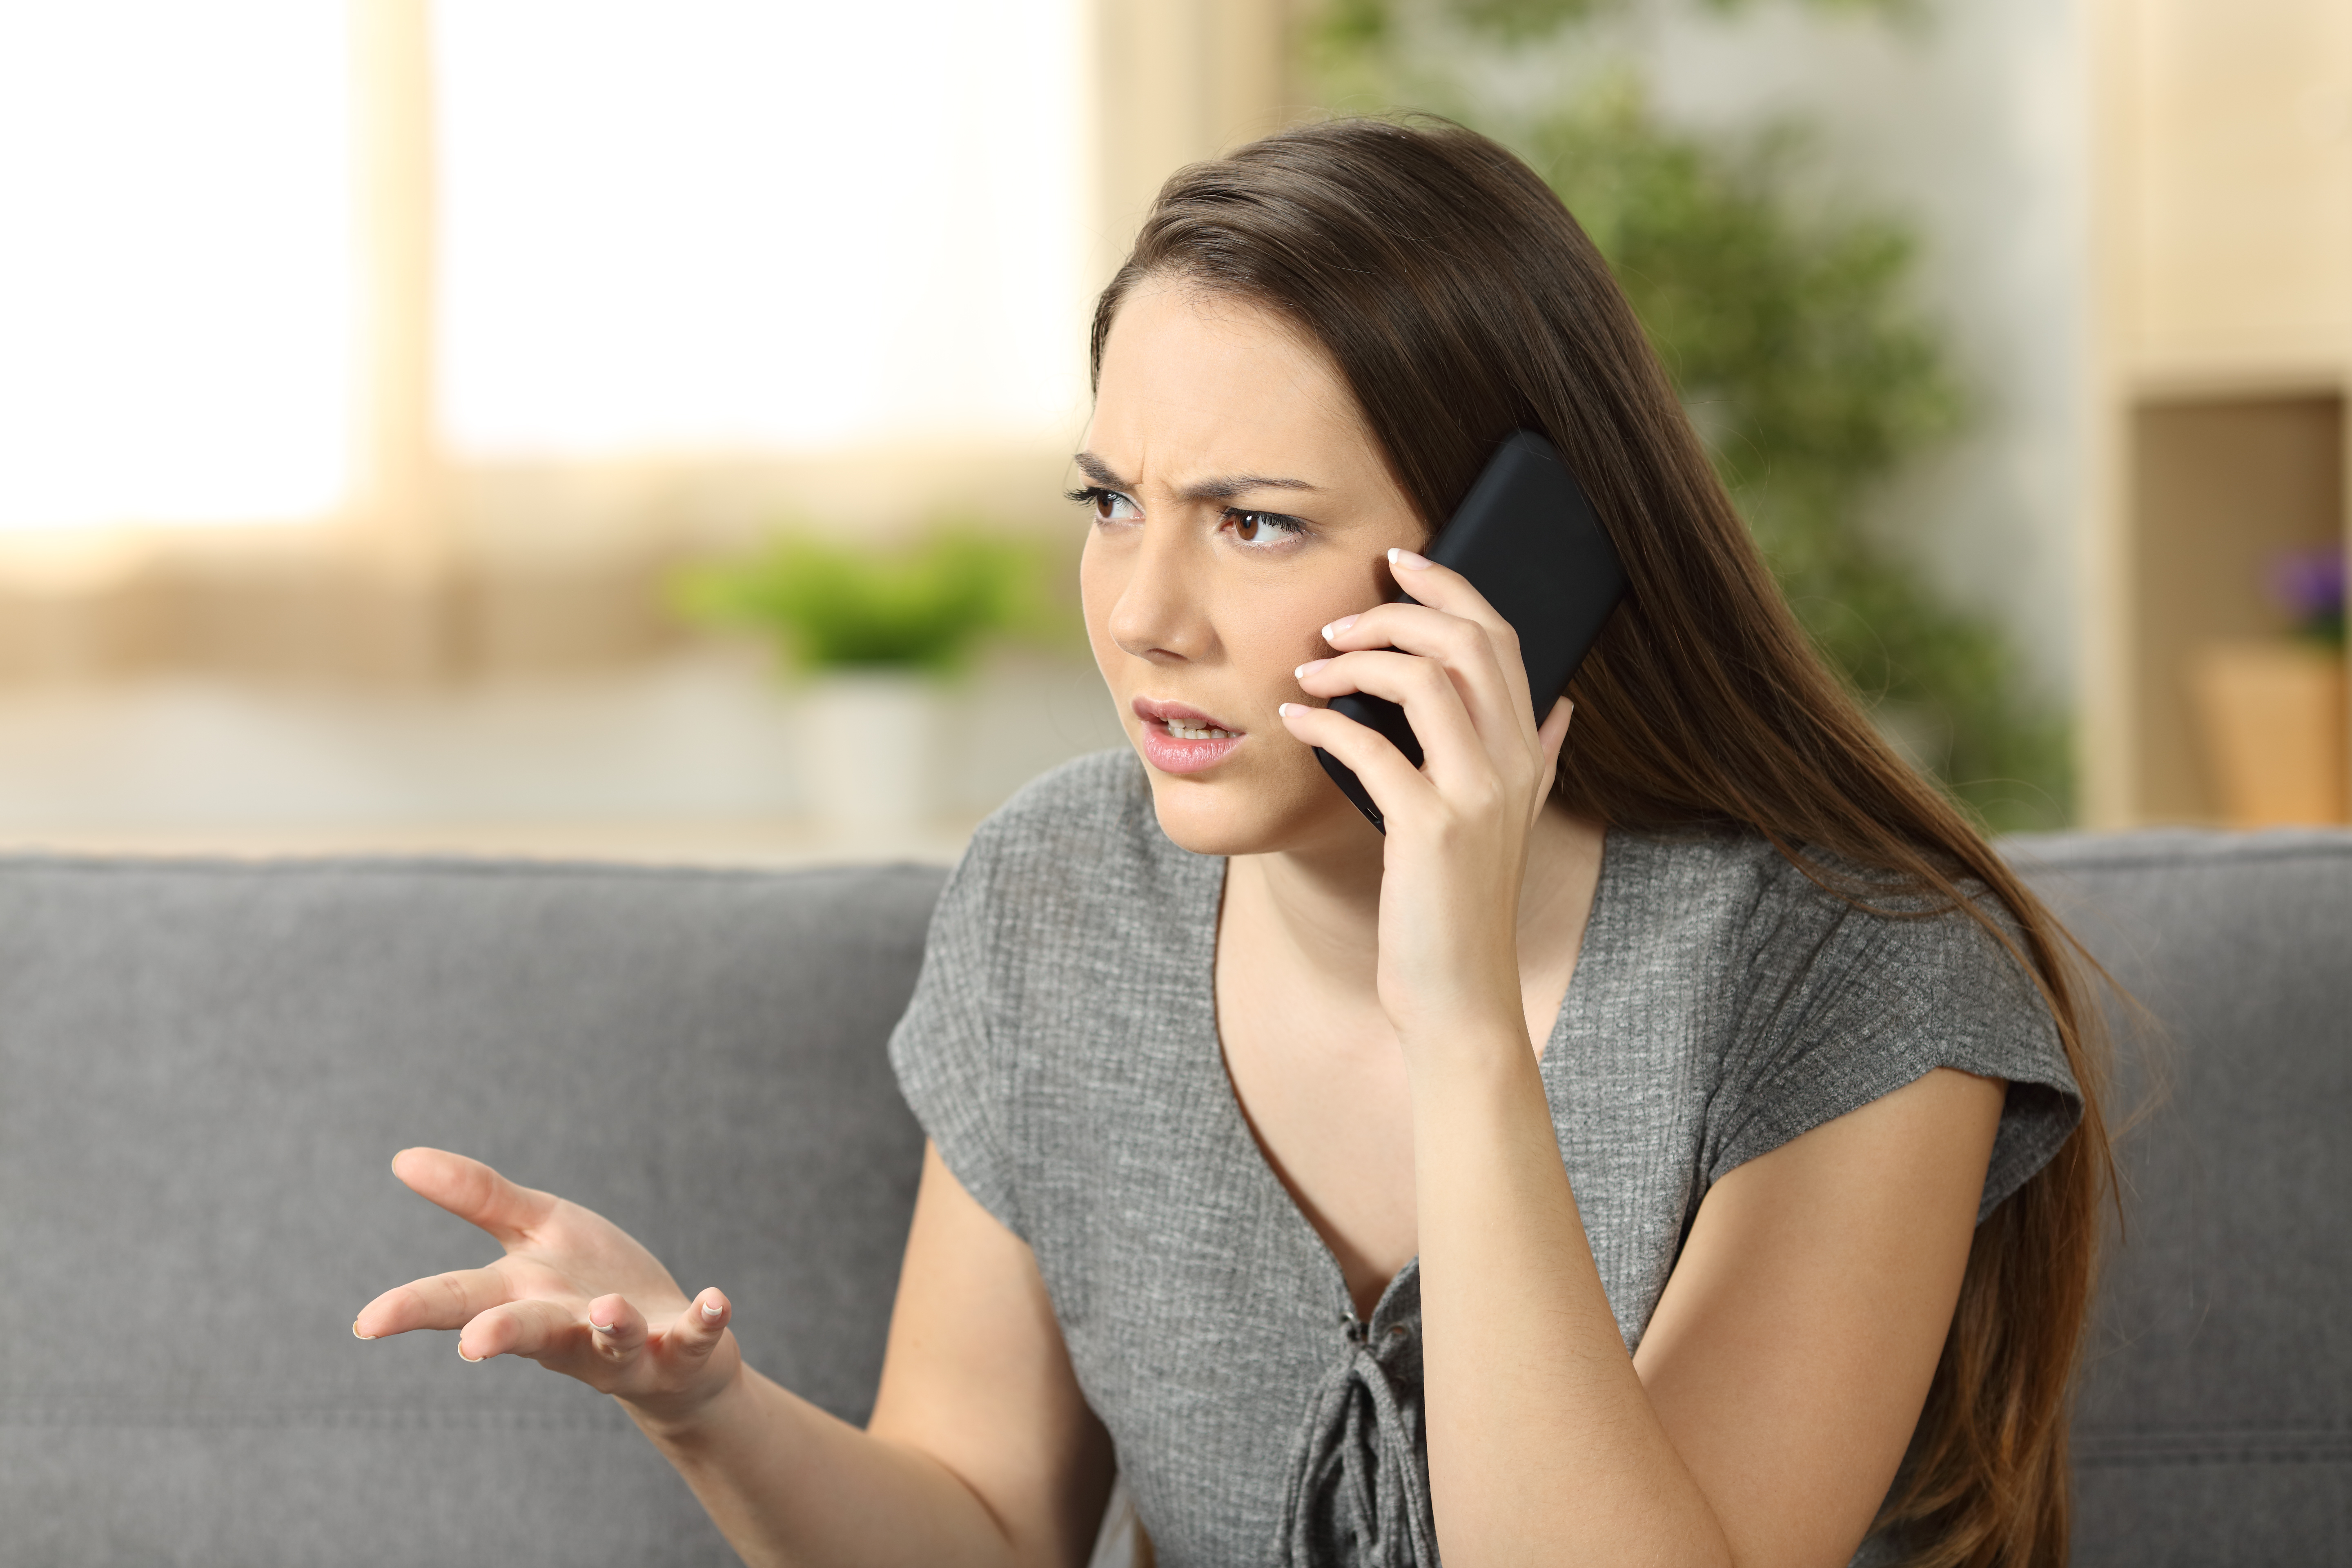 Une femme en train de parler lors d'un appel téléphonique | Source : Shutterstock